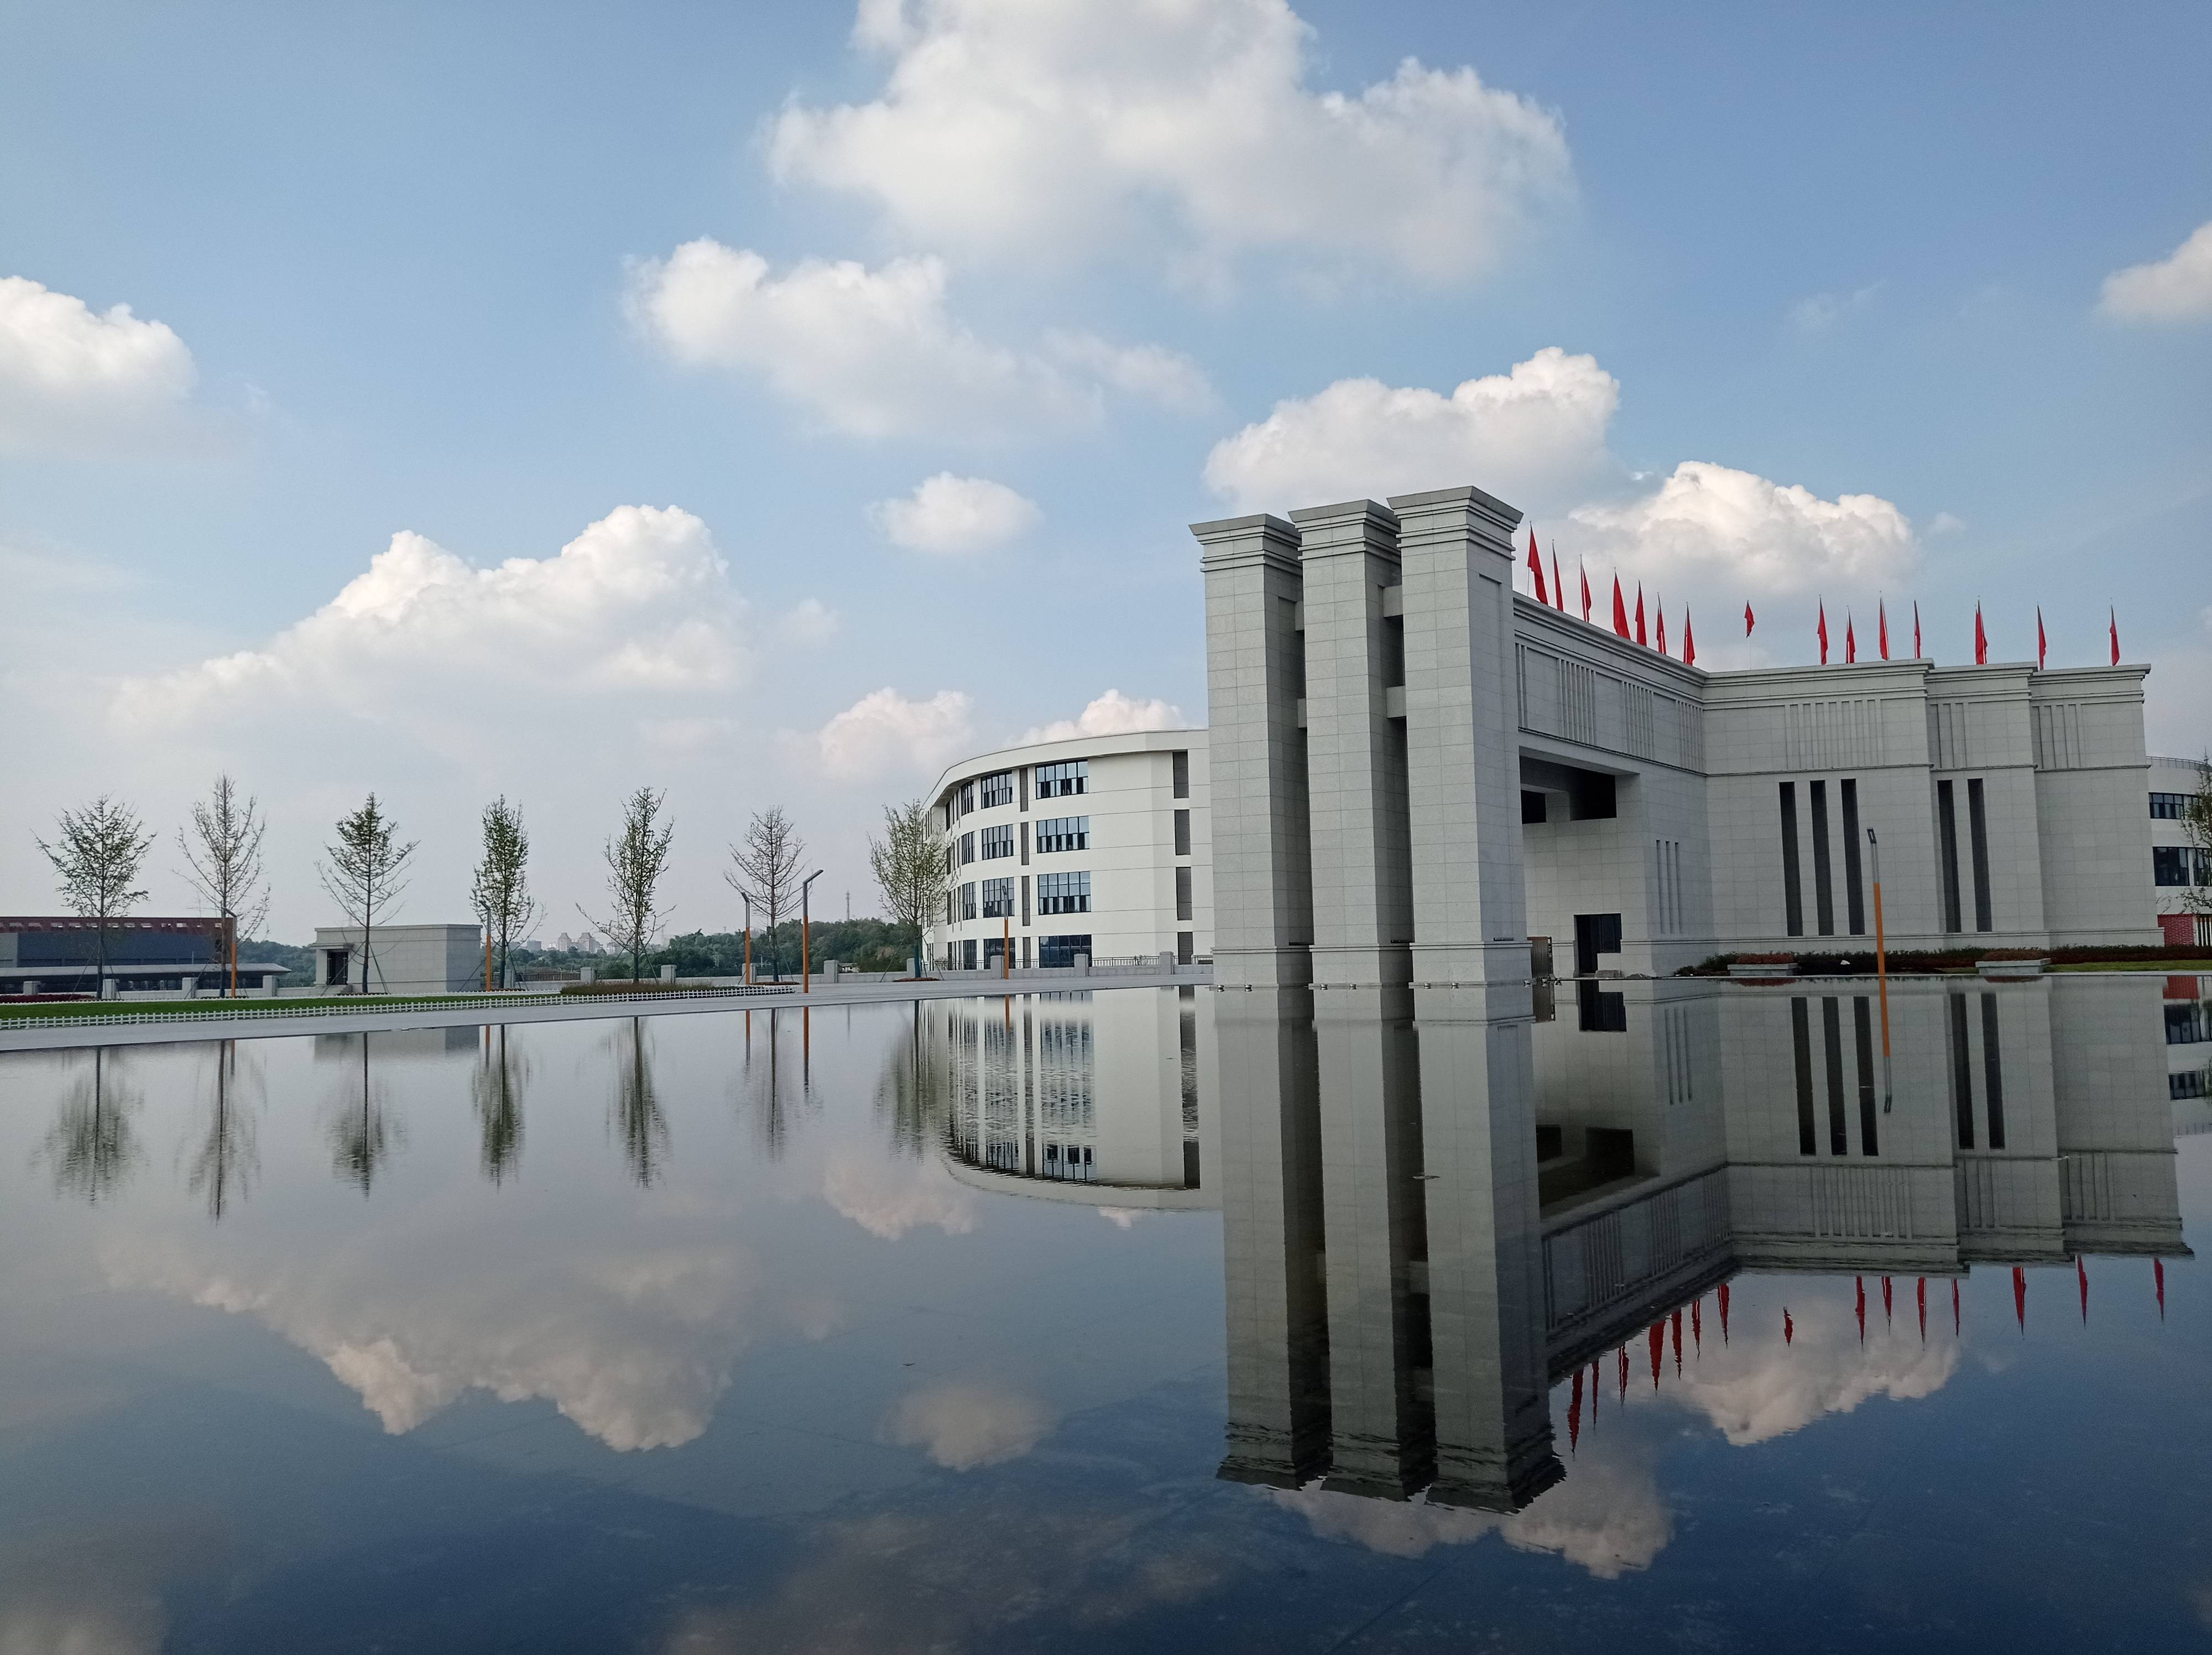 四川泸州化工学院图片